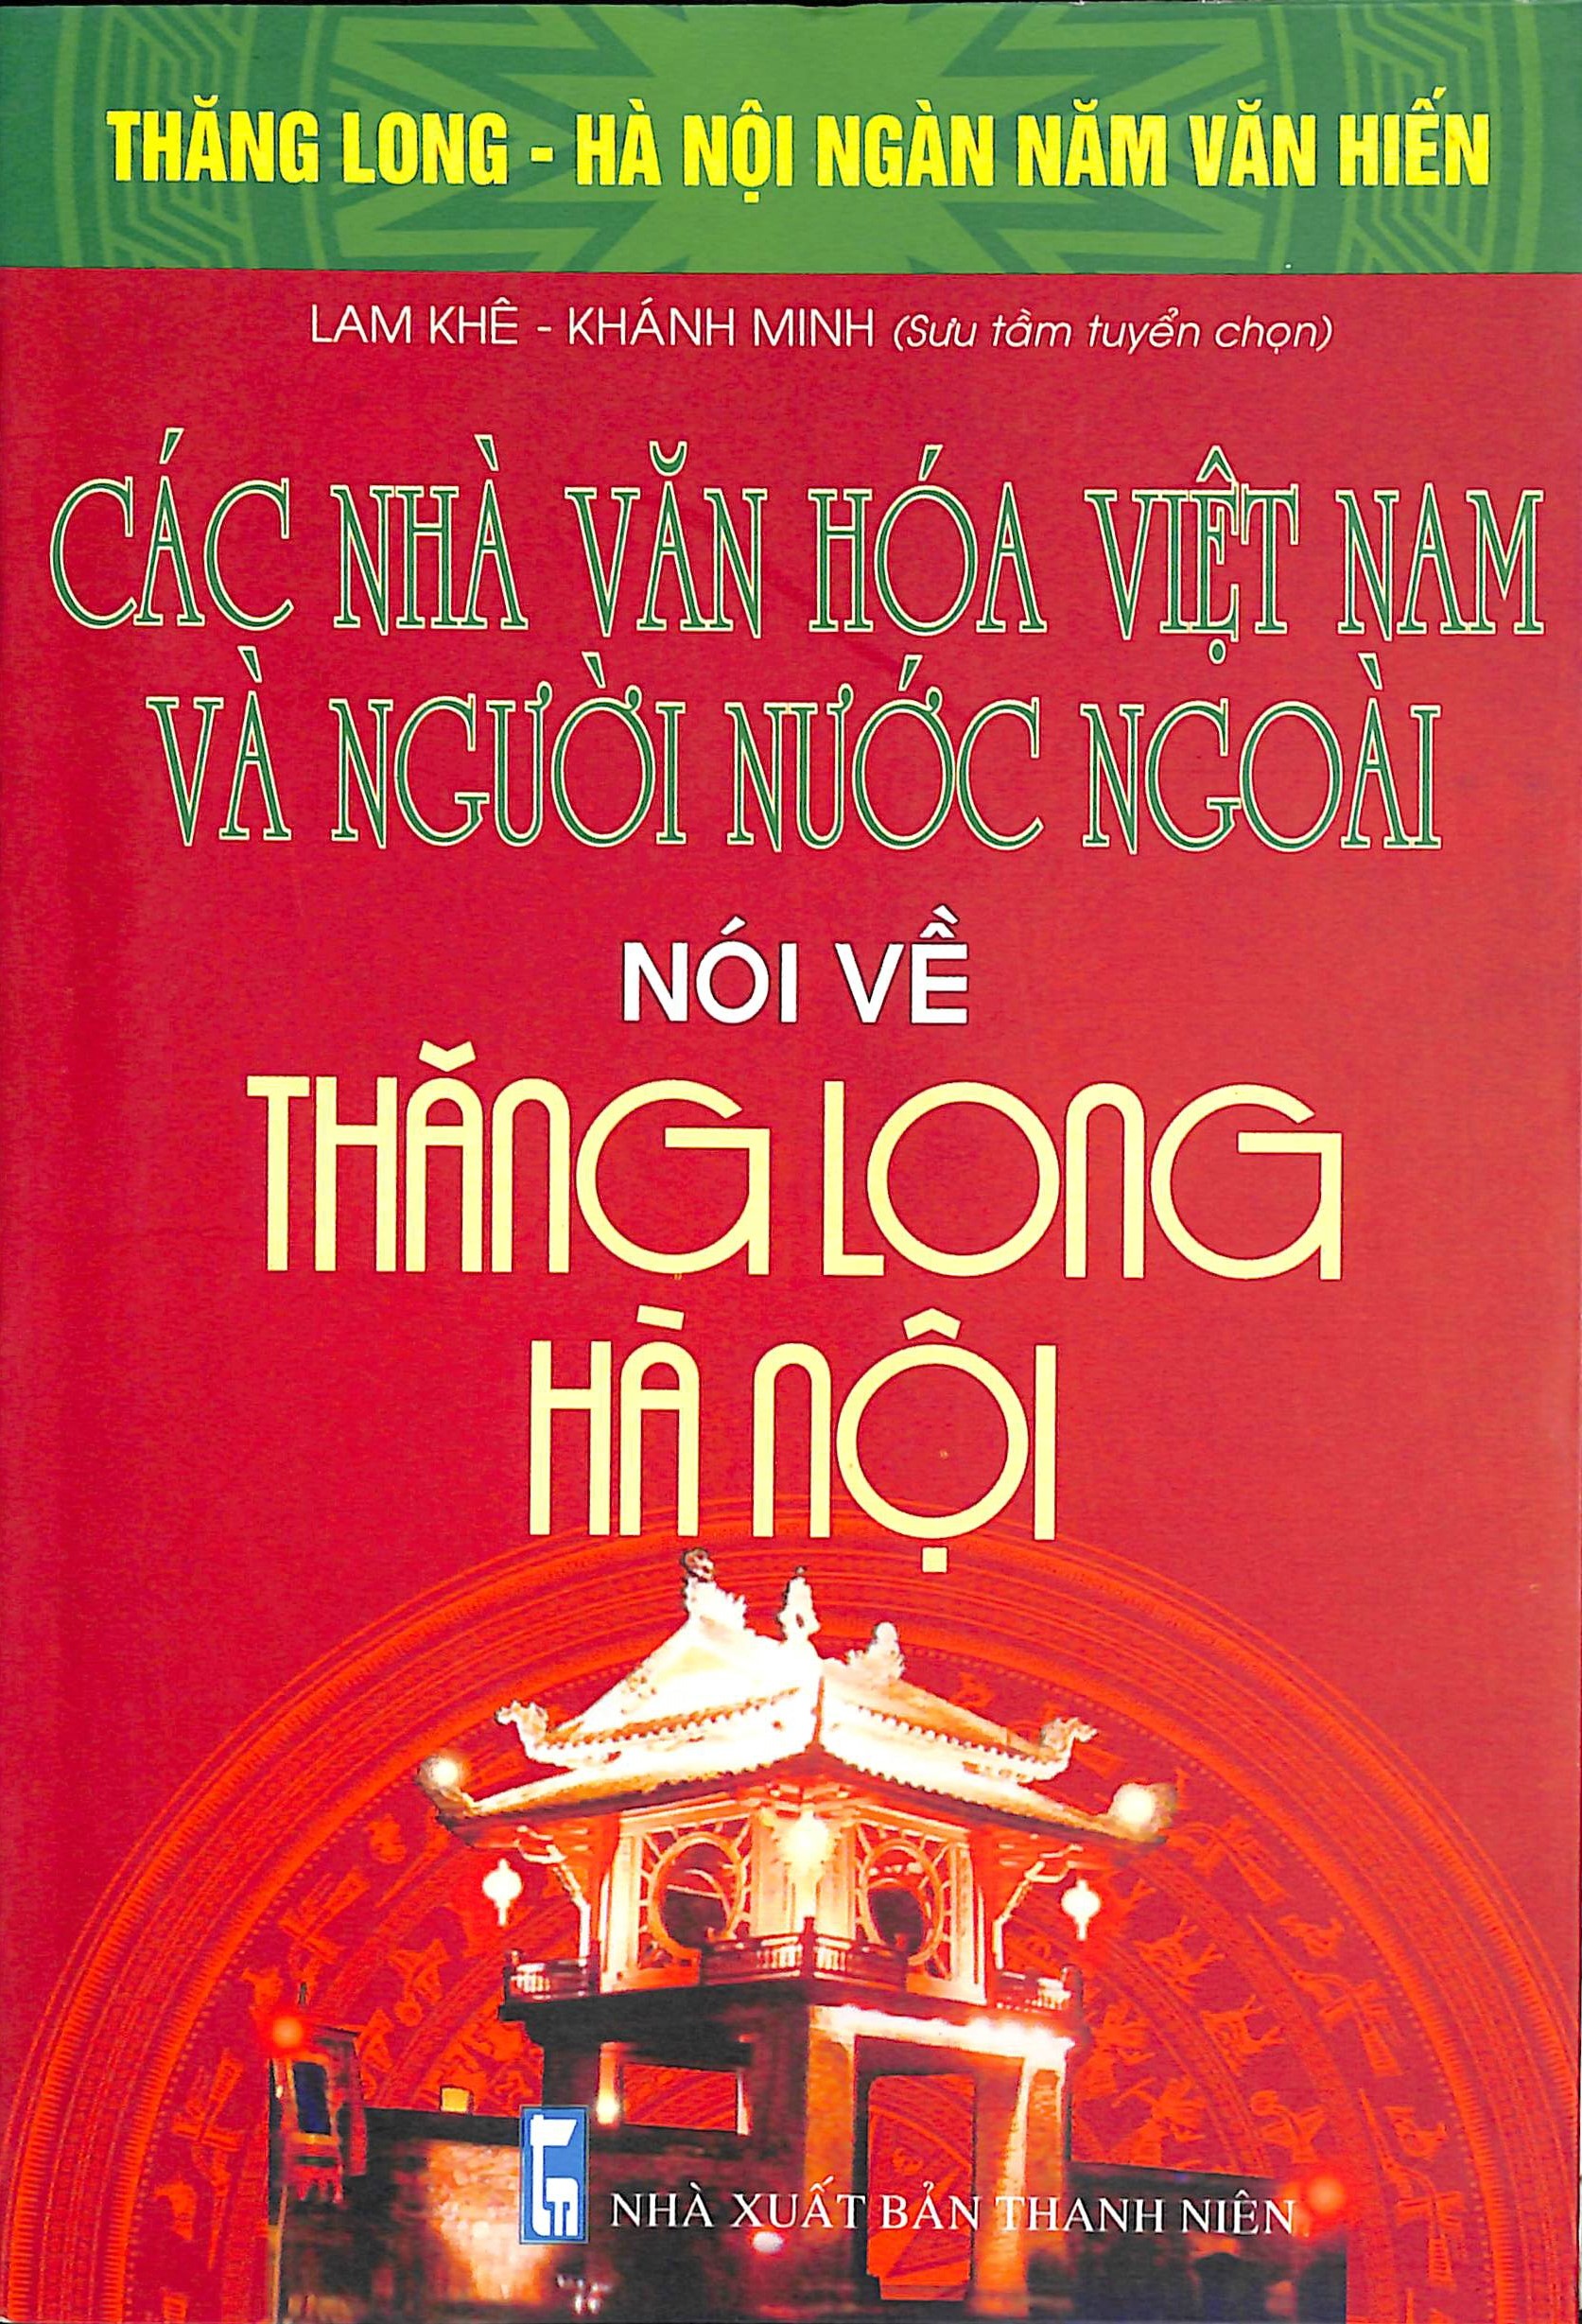 Các nhà văn hoá Việt Nam và người nước ngoài nói về Thăng Long - Hà Nội